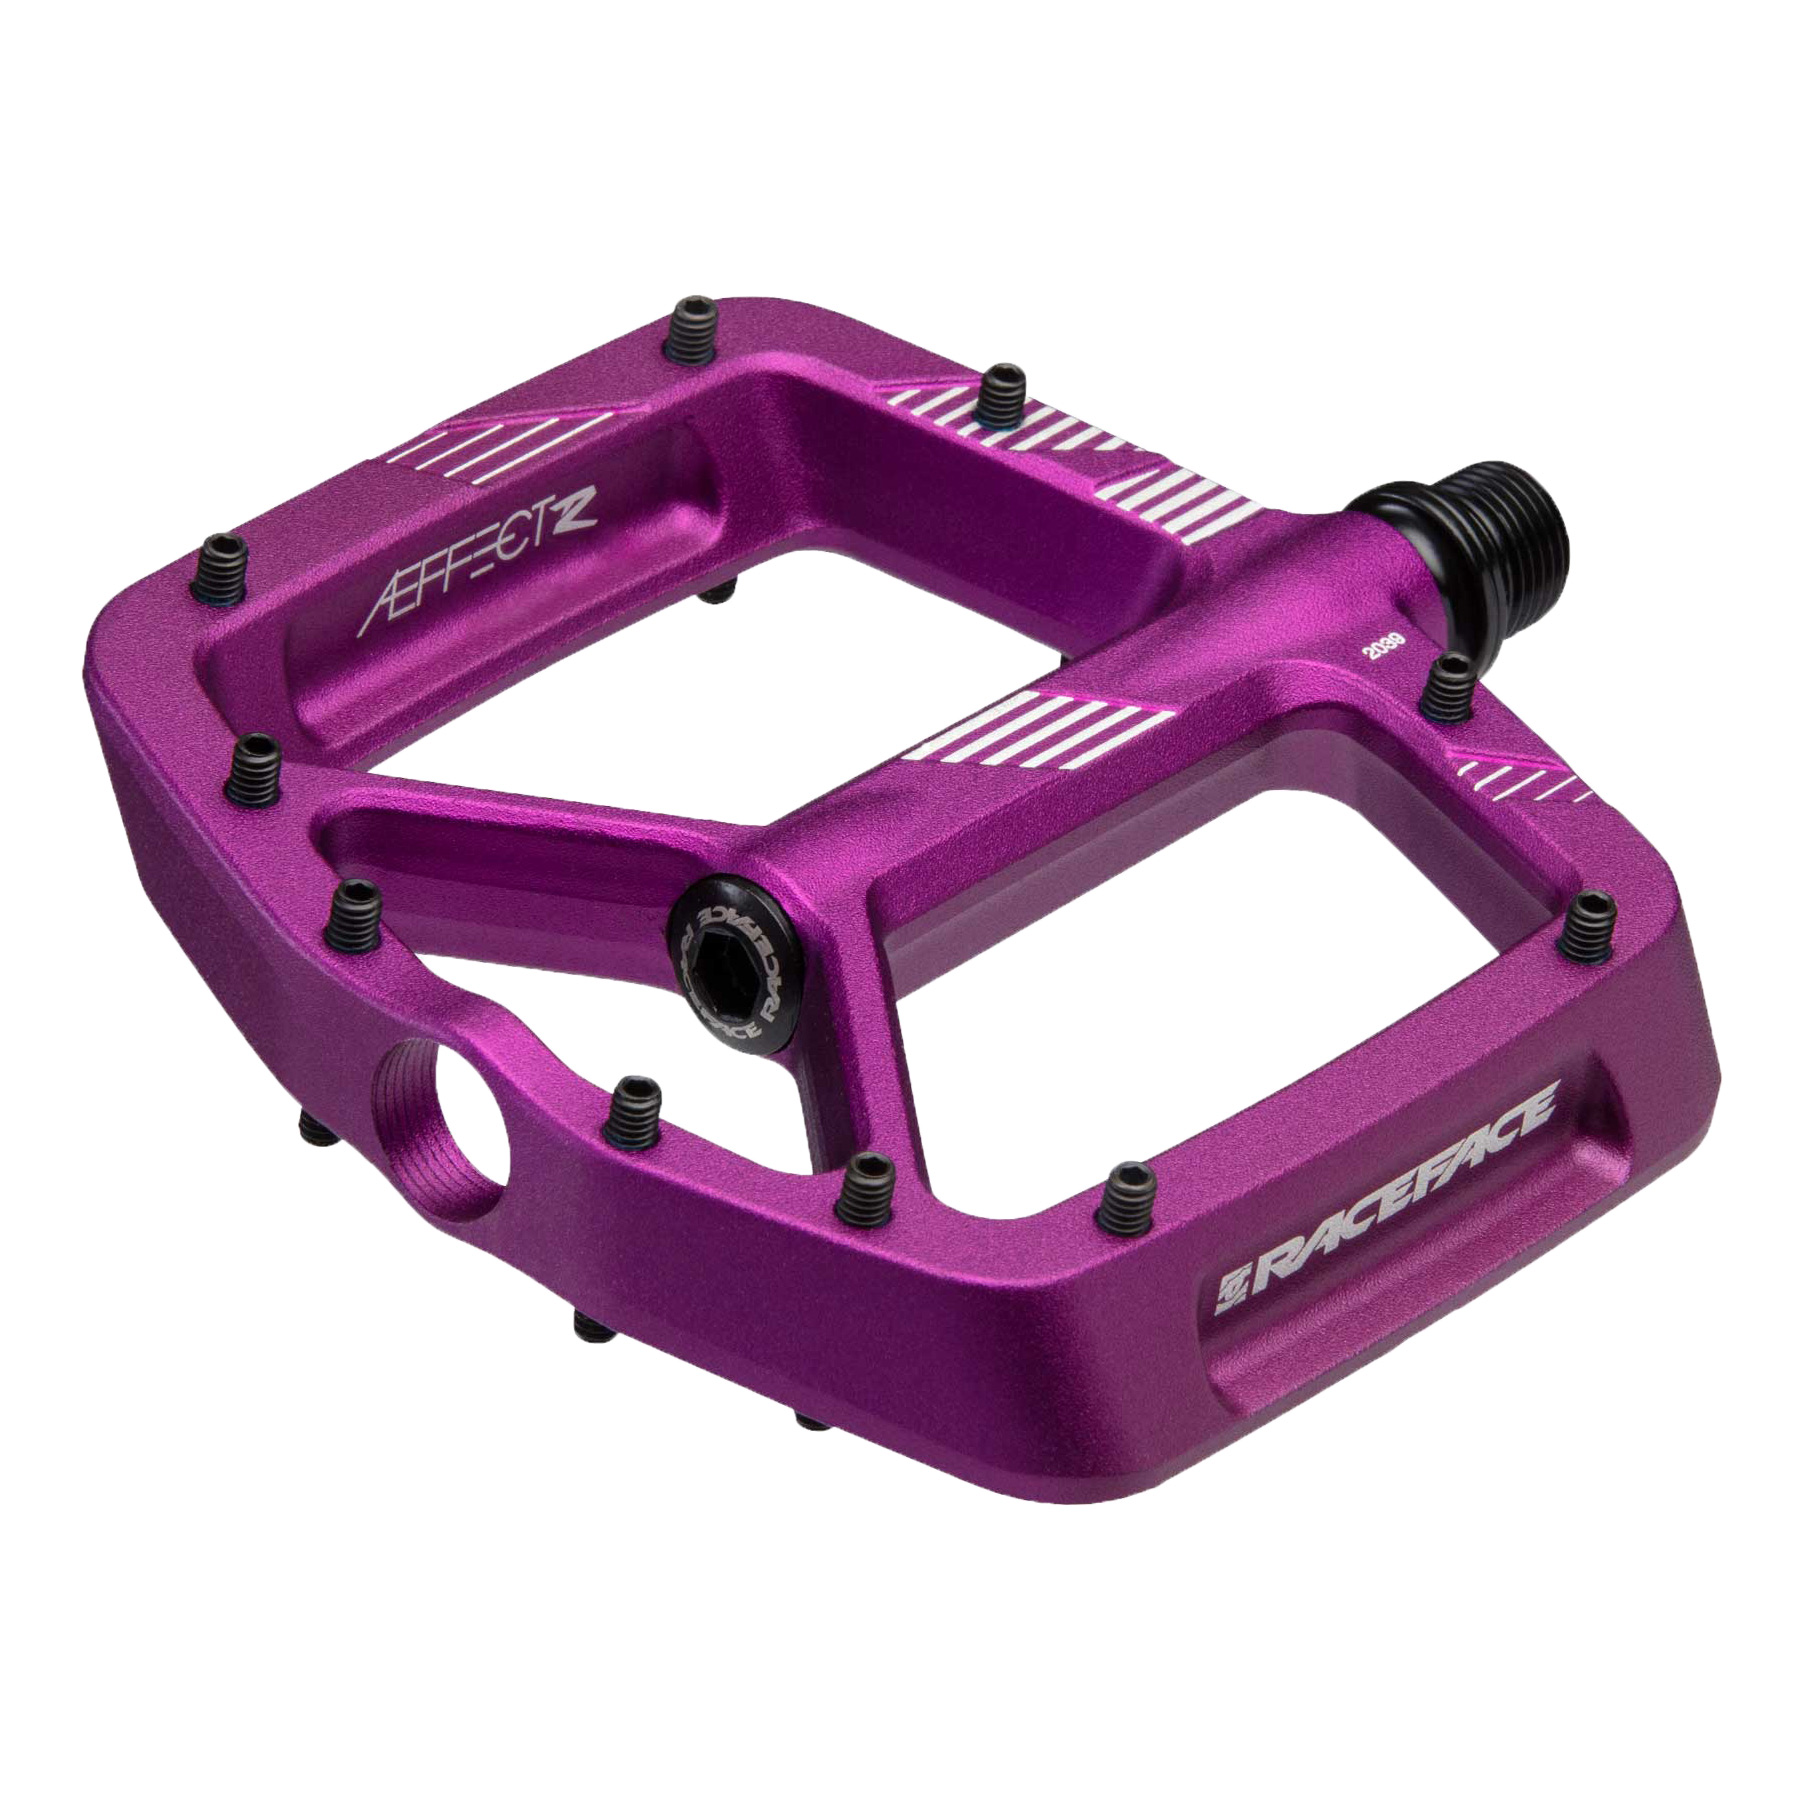 Productfoto van Race Face Aeffect R Pedal - purple